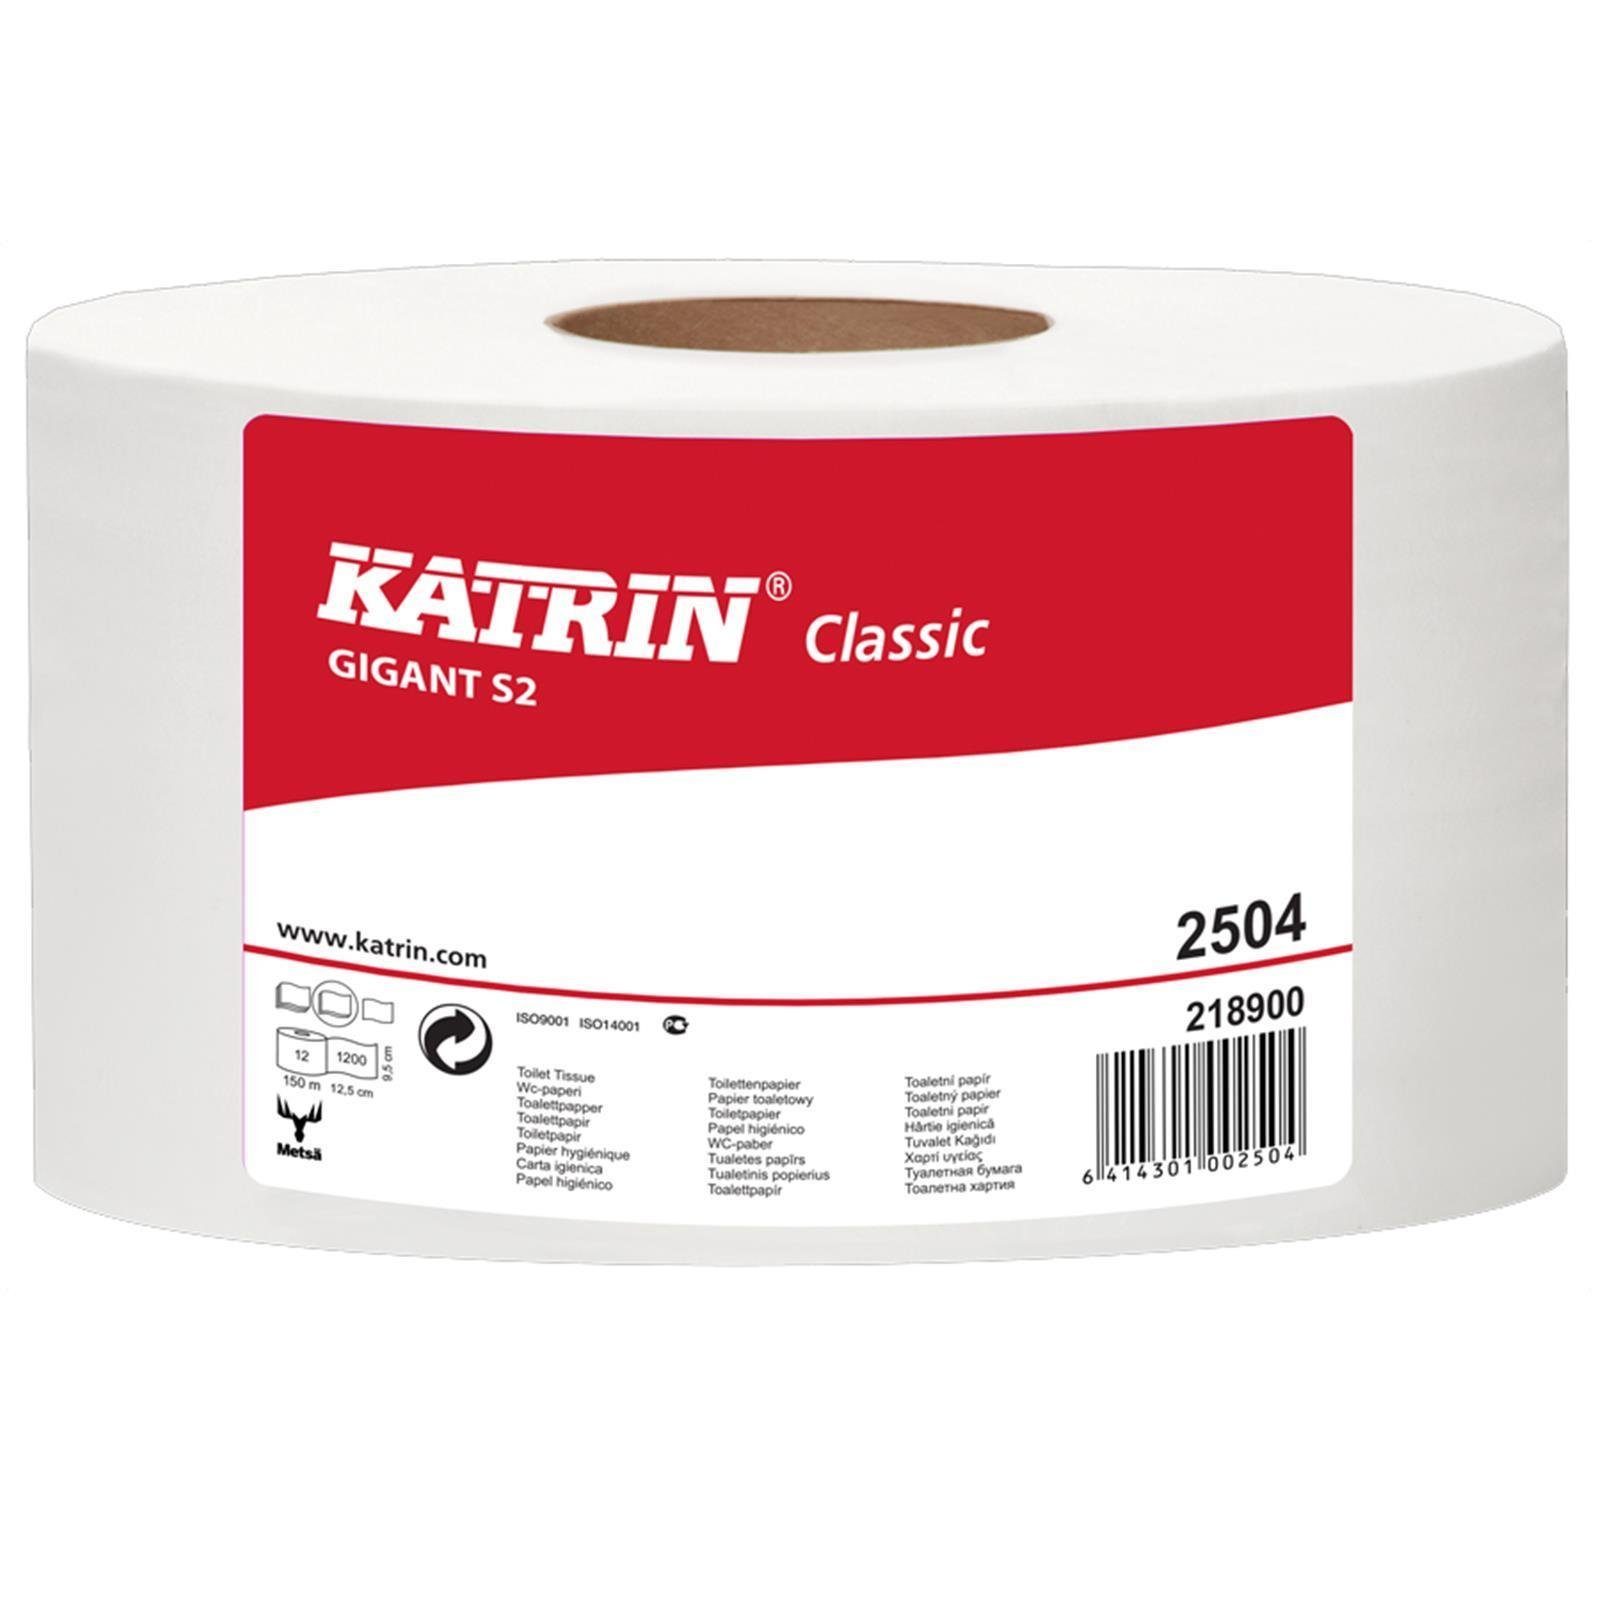 KATRIN Toilettenpapier Katrin Classic Gigant S 2 150m